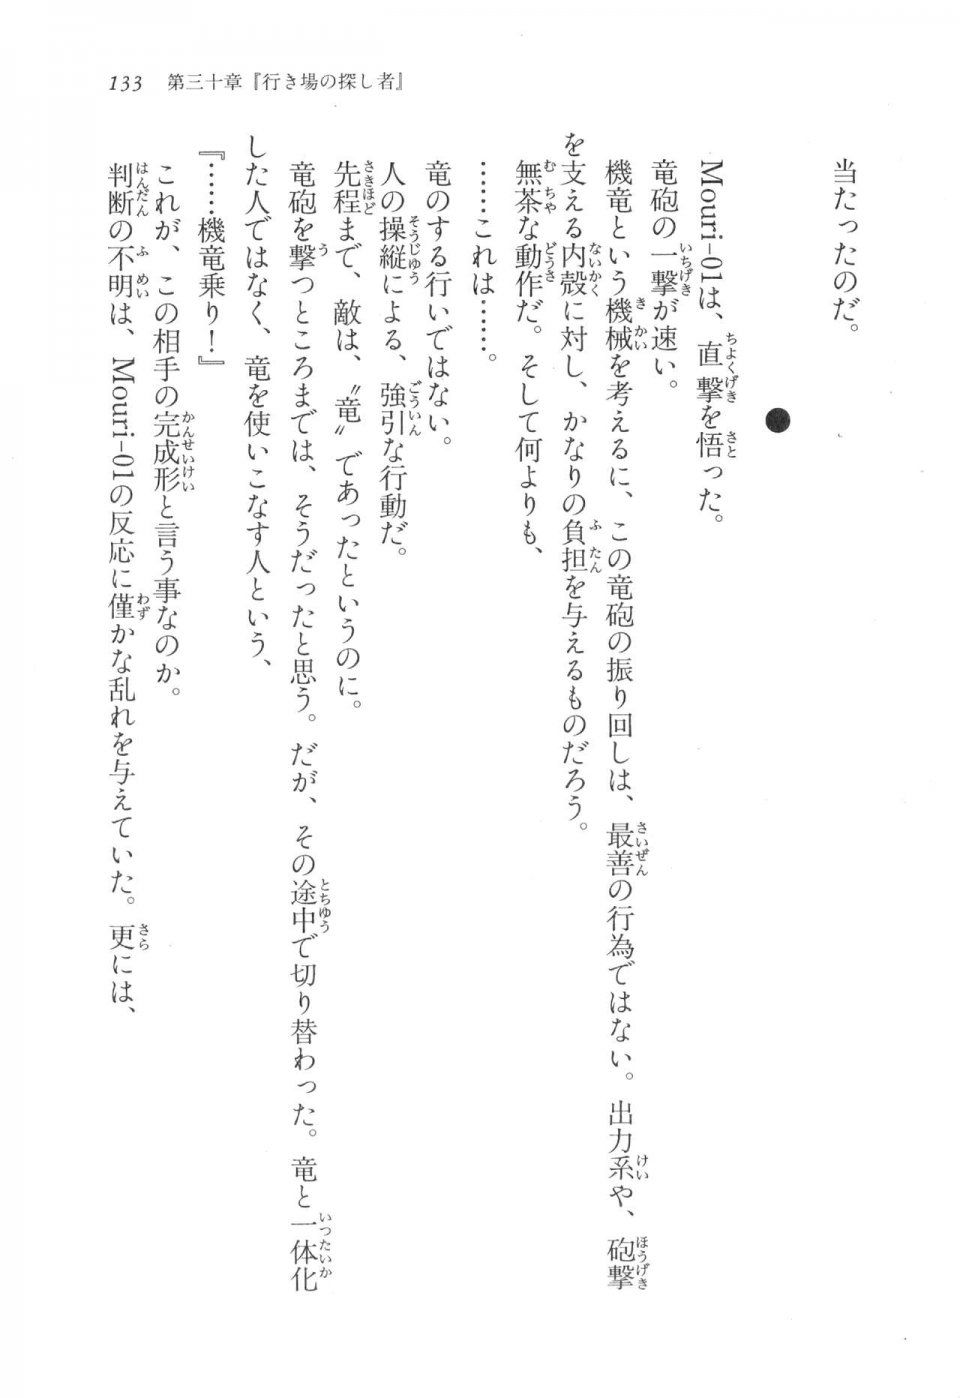 Kyoukai Senjou no Horizon LN Vol 17(7B) - Photo #133